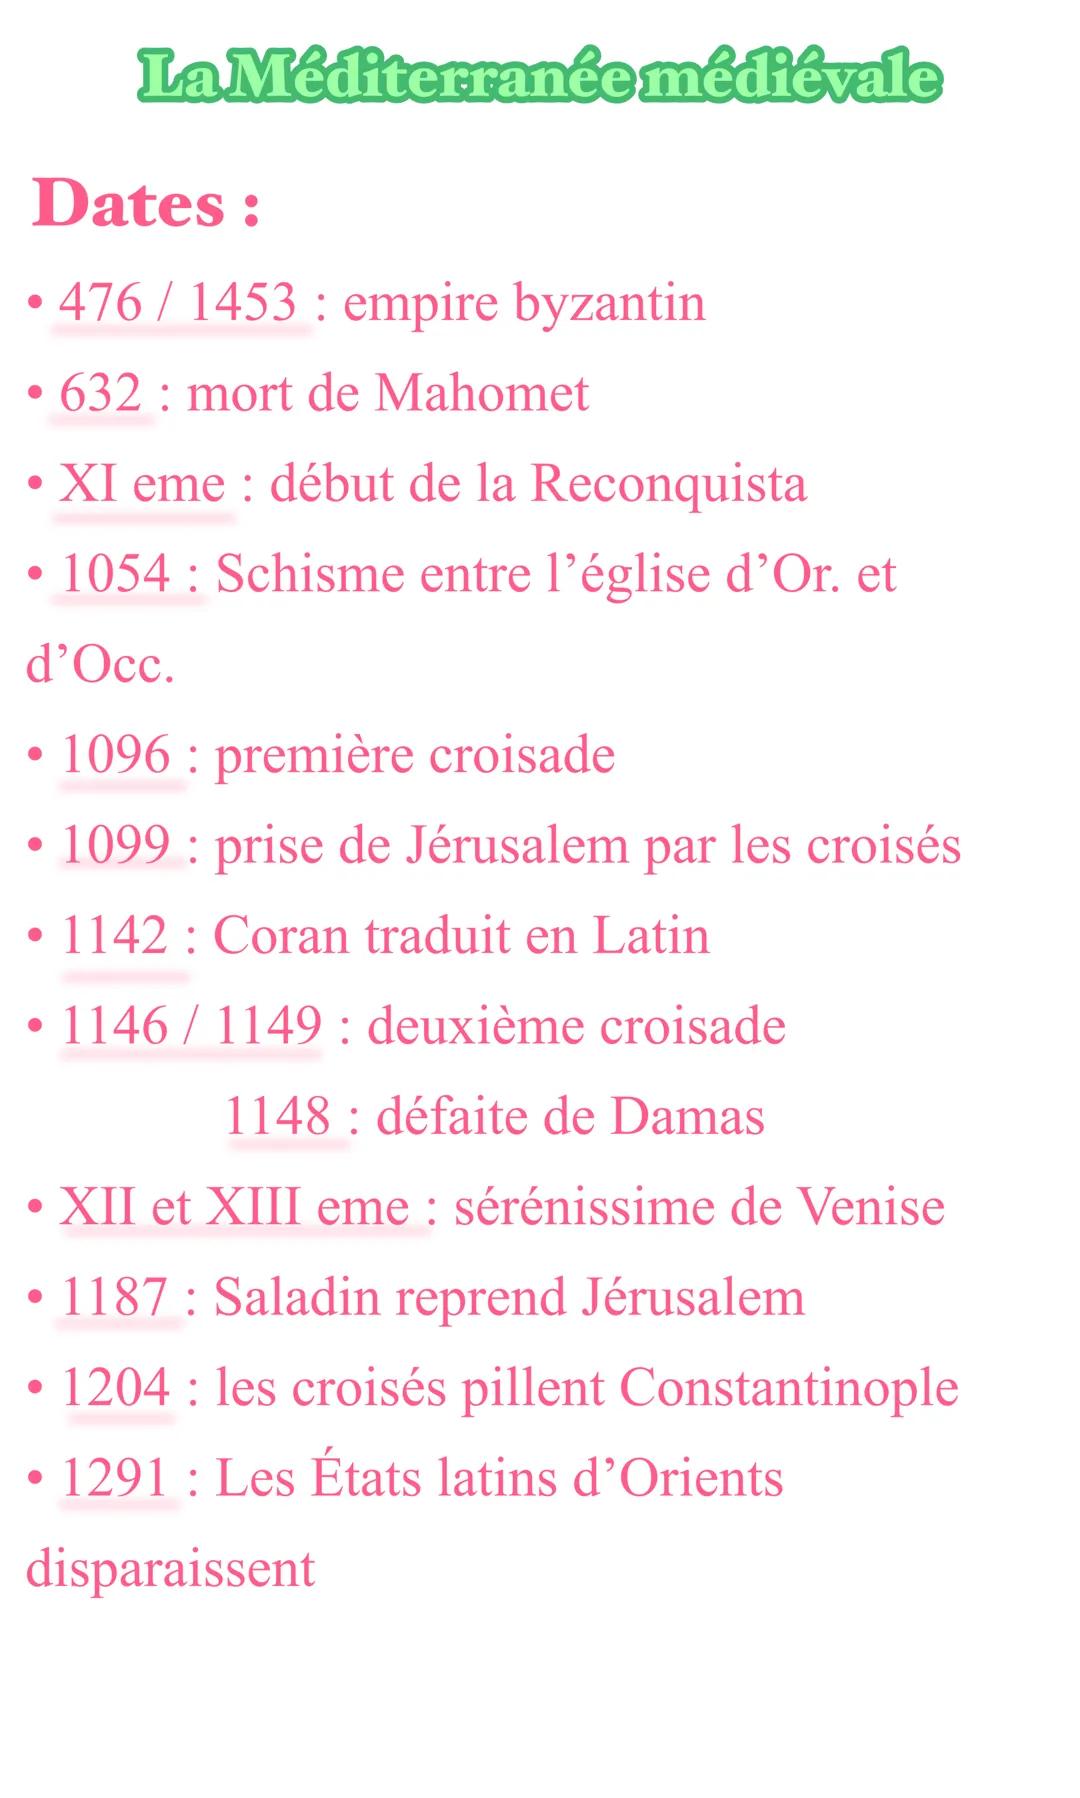 ●
Dates:
476/1453: empire byzantin
• 632 mort de Mahomet
●
XI eme: début de la Reconquista
• 1054: Schisme entre l'église d'Or. et
d'Occ.
●
